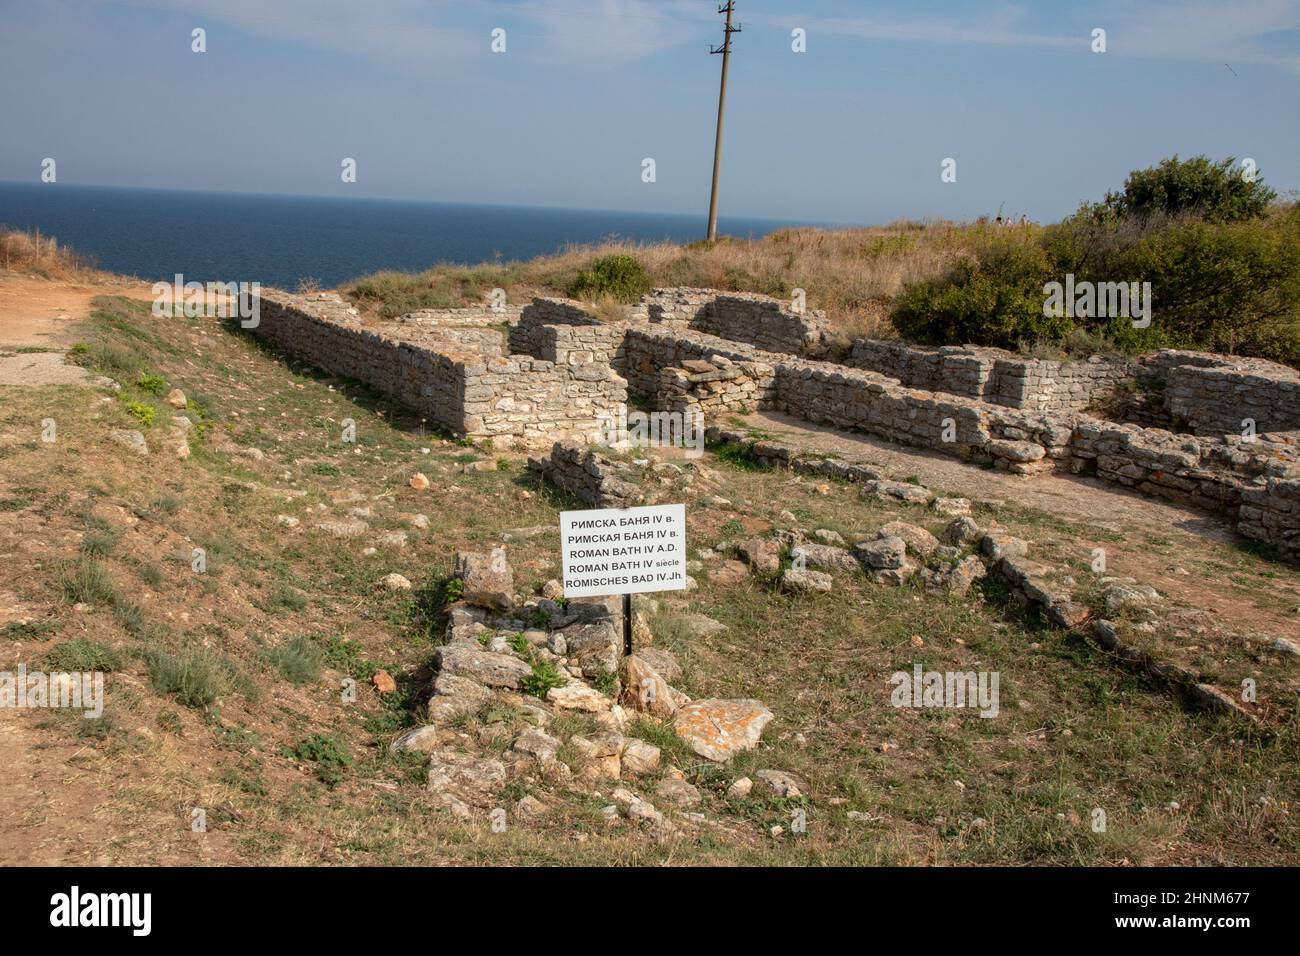 Kap Caliacra, Bulgarien - SEP 14, 2021. Auf dem Gebiet von Kaliakra wurden archäologische Überreste von Gebäuden, darunter ein römisches Bad aus dem IV. Jahrhundert entdeckt. Stockfoto